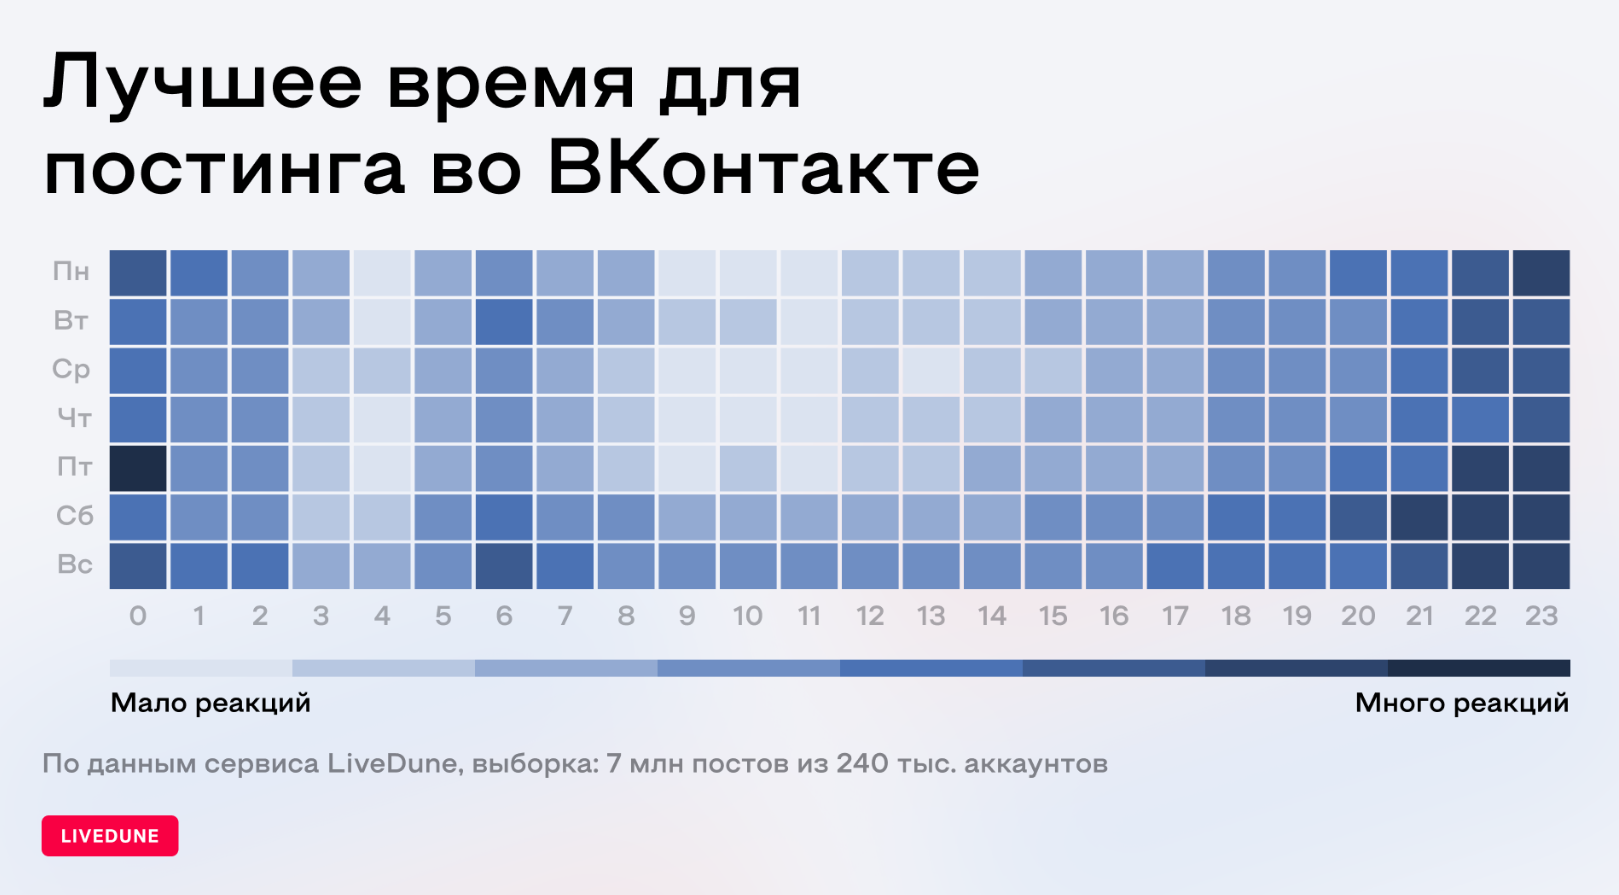 В какое время лучше публиковать посты во ВКонтакте